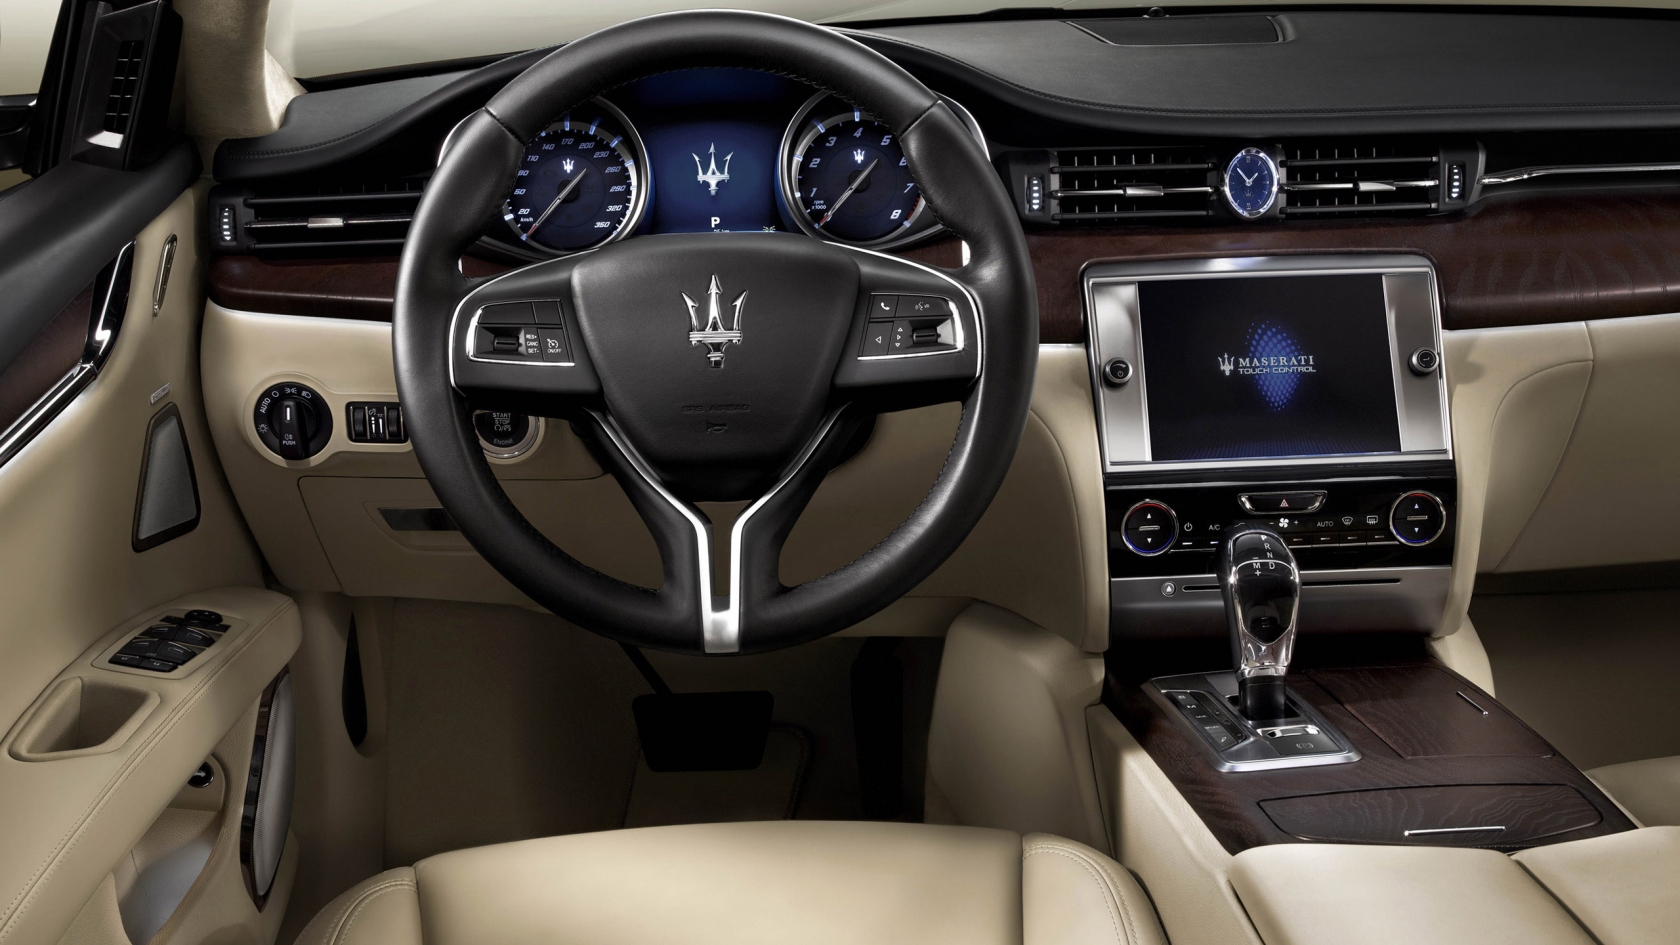 Interior of Maserati Quattroporte for 1680 x 945 HDTV resolution